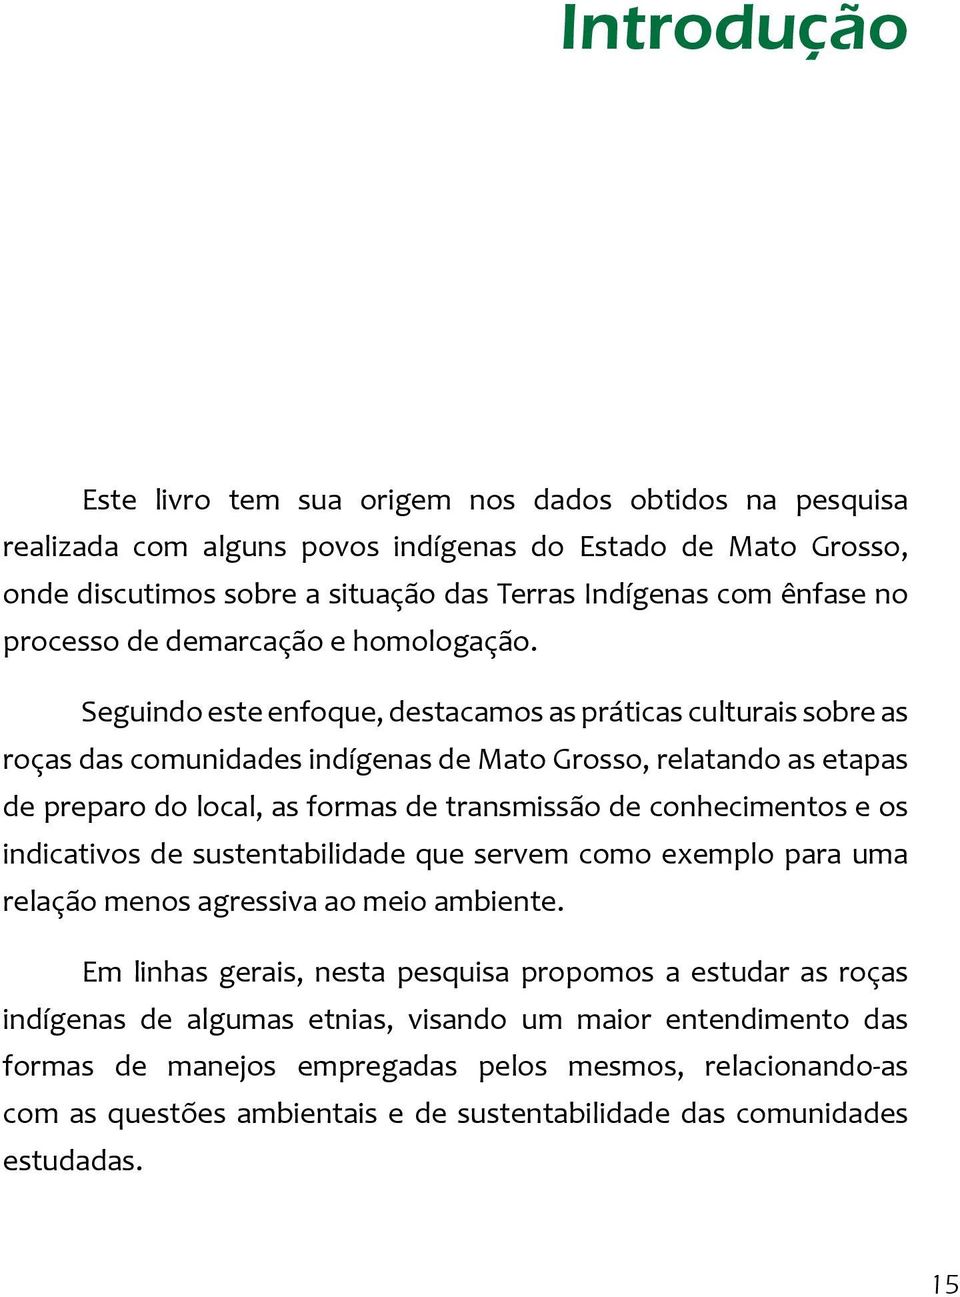 Seguindo este enfoque, destacamos as práticas culturais sobre as roças das comunidades indígenas de Mato Grosso, relatando as etapas de preparo do local, as formas de transmissão de conhecimentos e